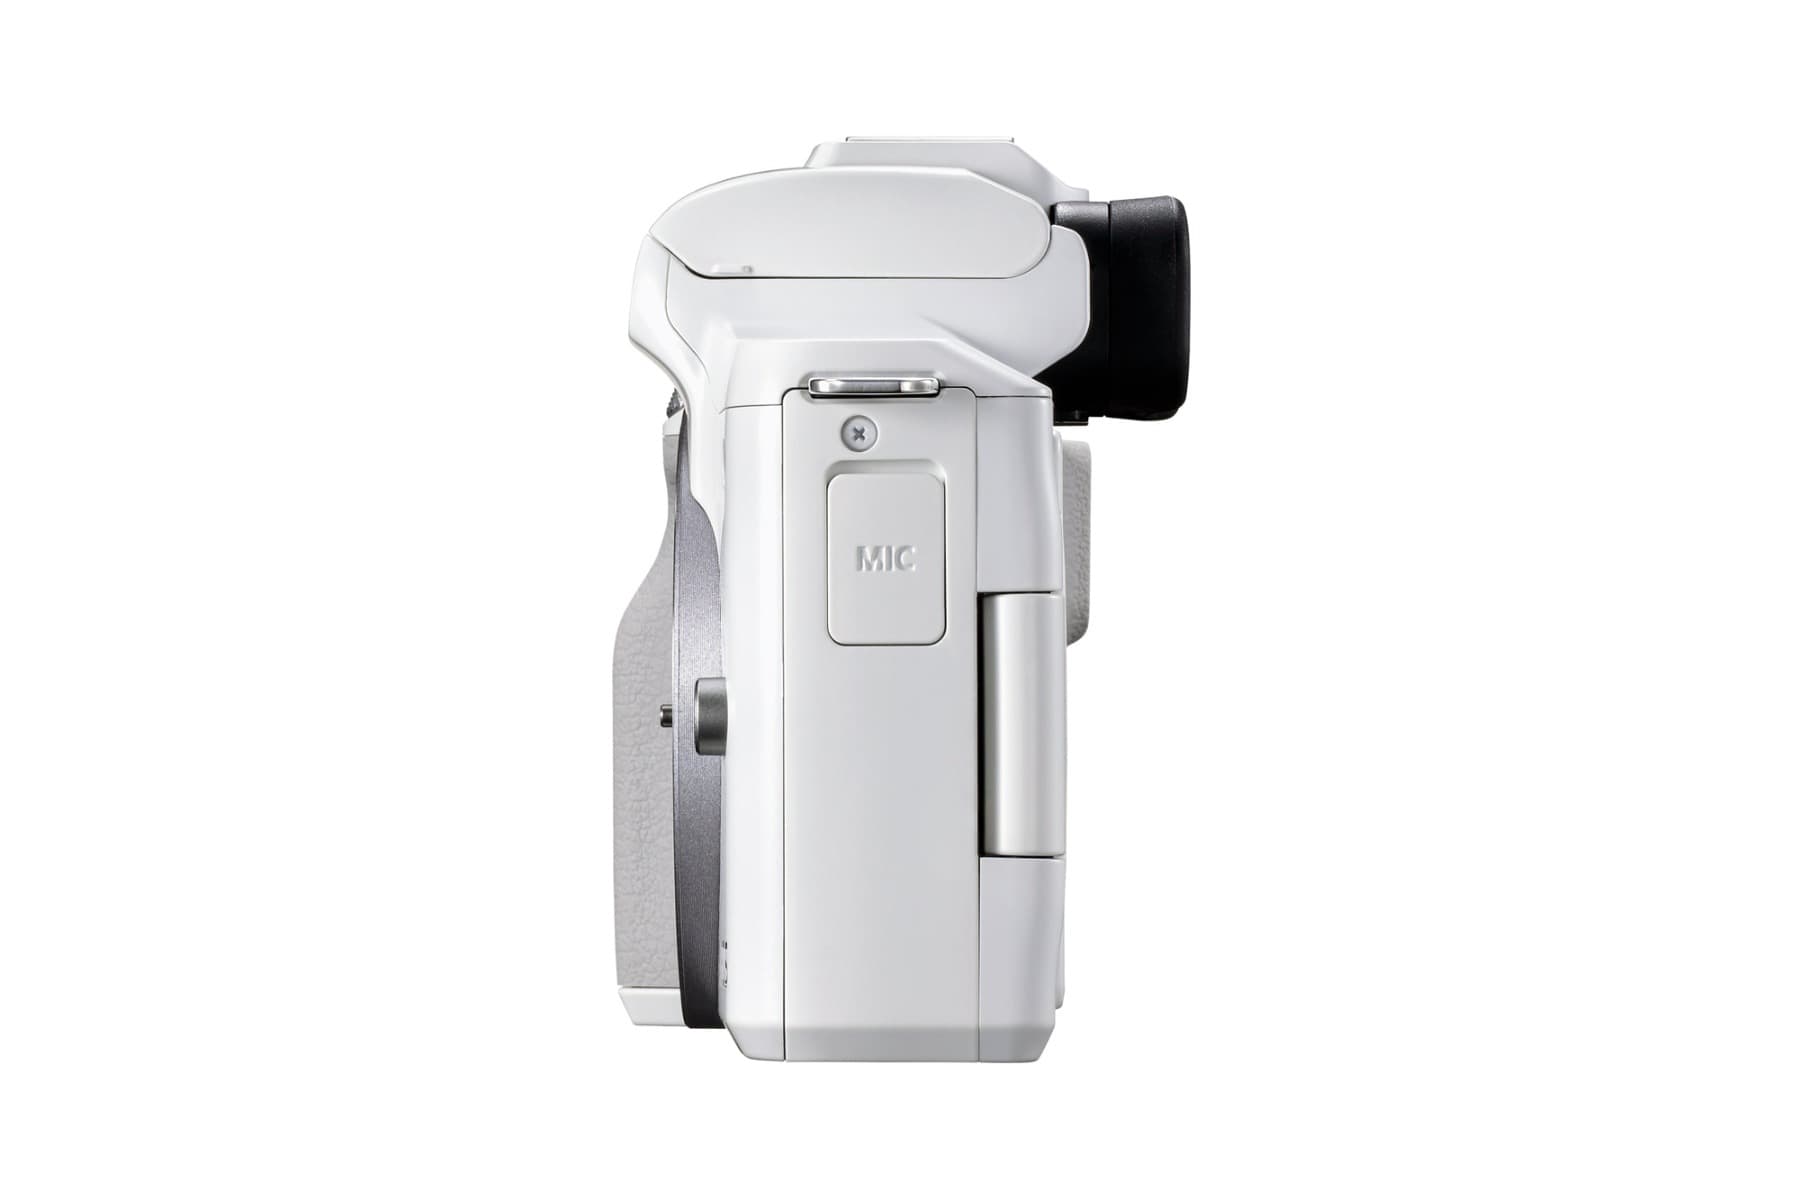 Canon EOS M50 Mark II Kit EF-M 15-45mm F/3.5-6.3 IS STM Белый Гарантия Производителя. Ростест/ЕАС